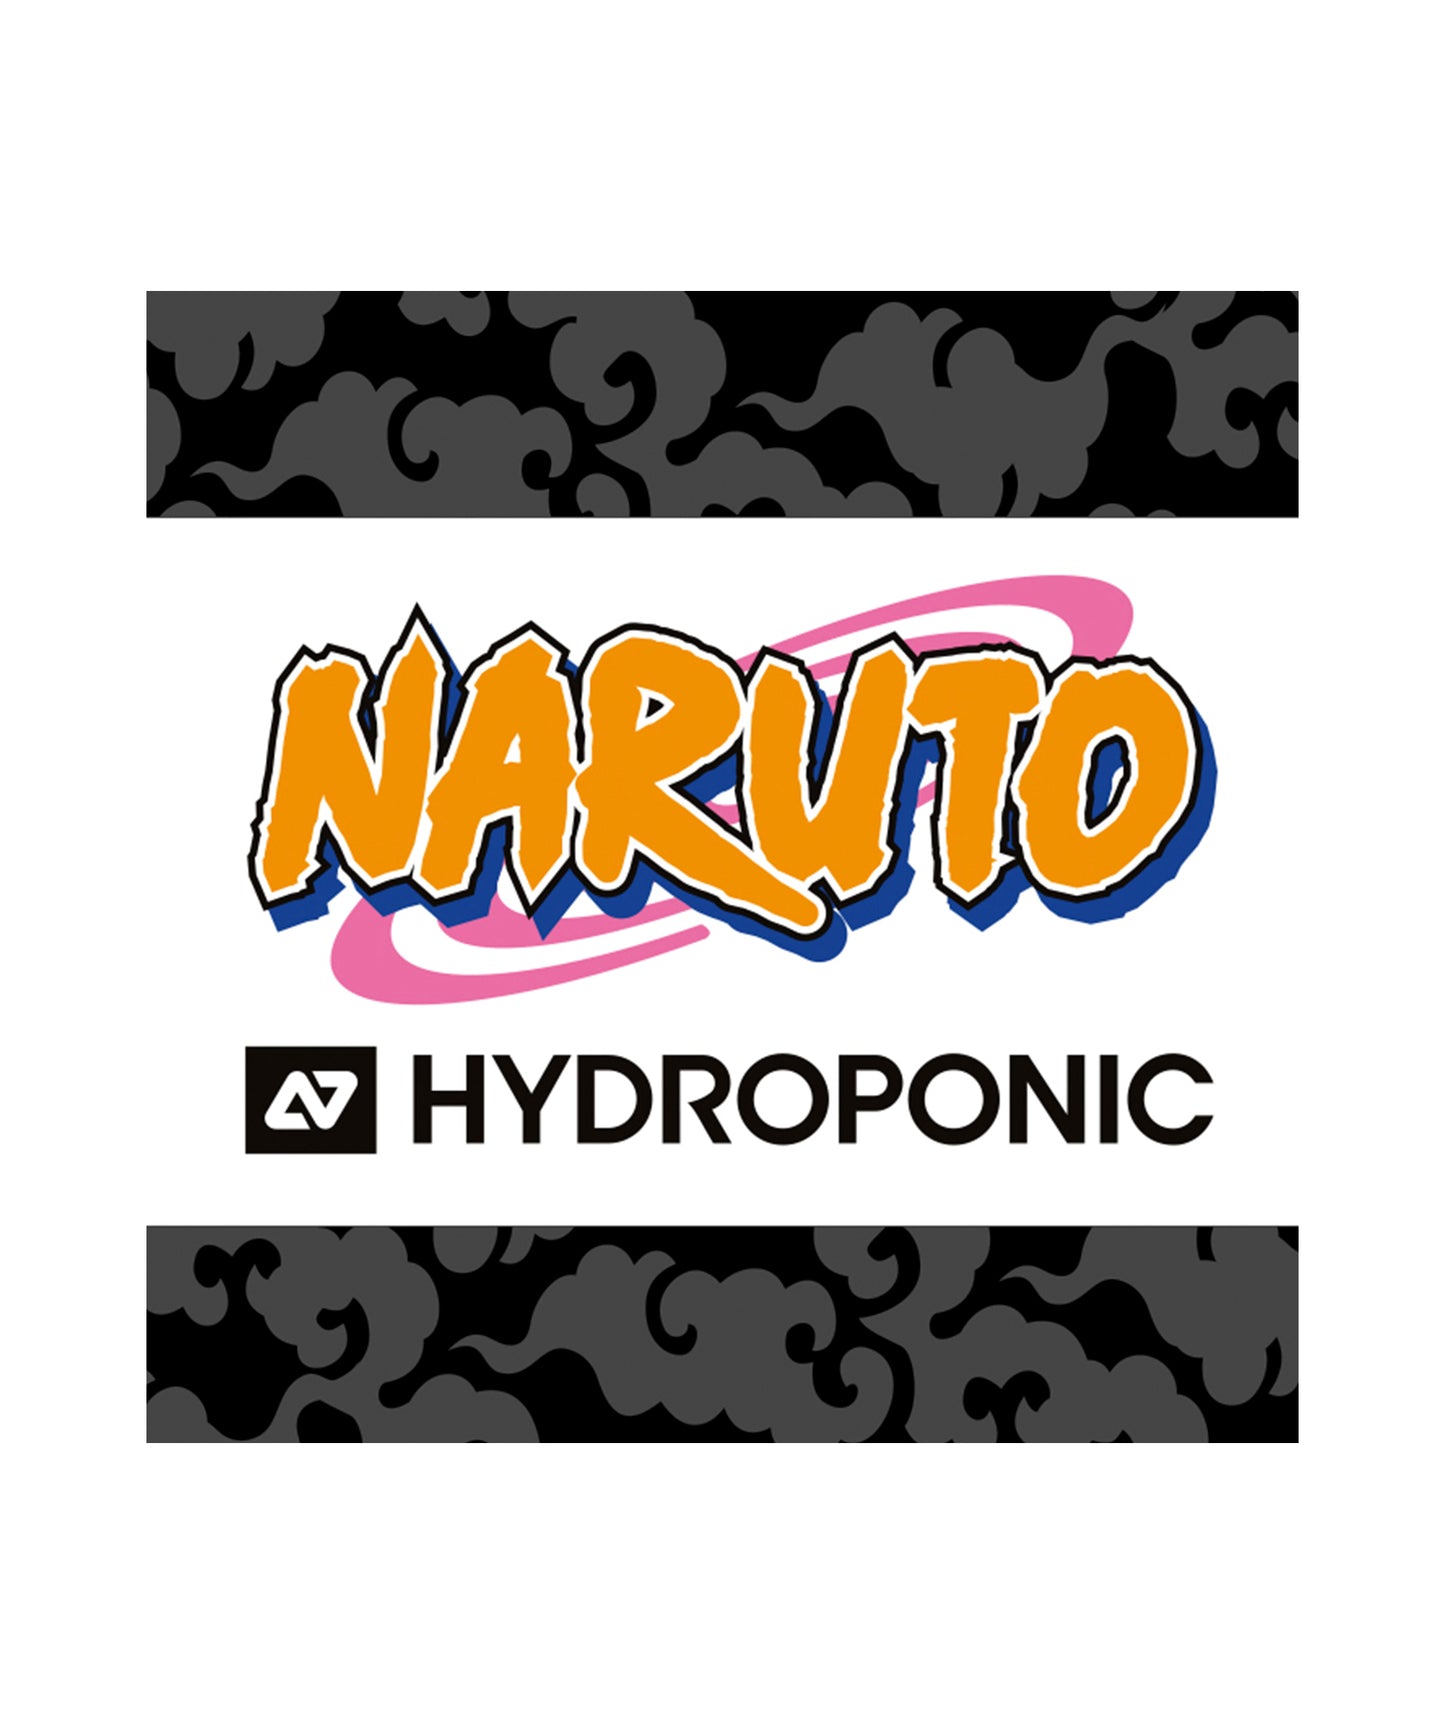 tabla-de-skate-hydroponic-naruto-leaf-village-ninjas-colaboracion-ocn-el-famoso-manga-7-laminas-de-arce-totalmente-profesional